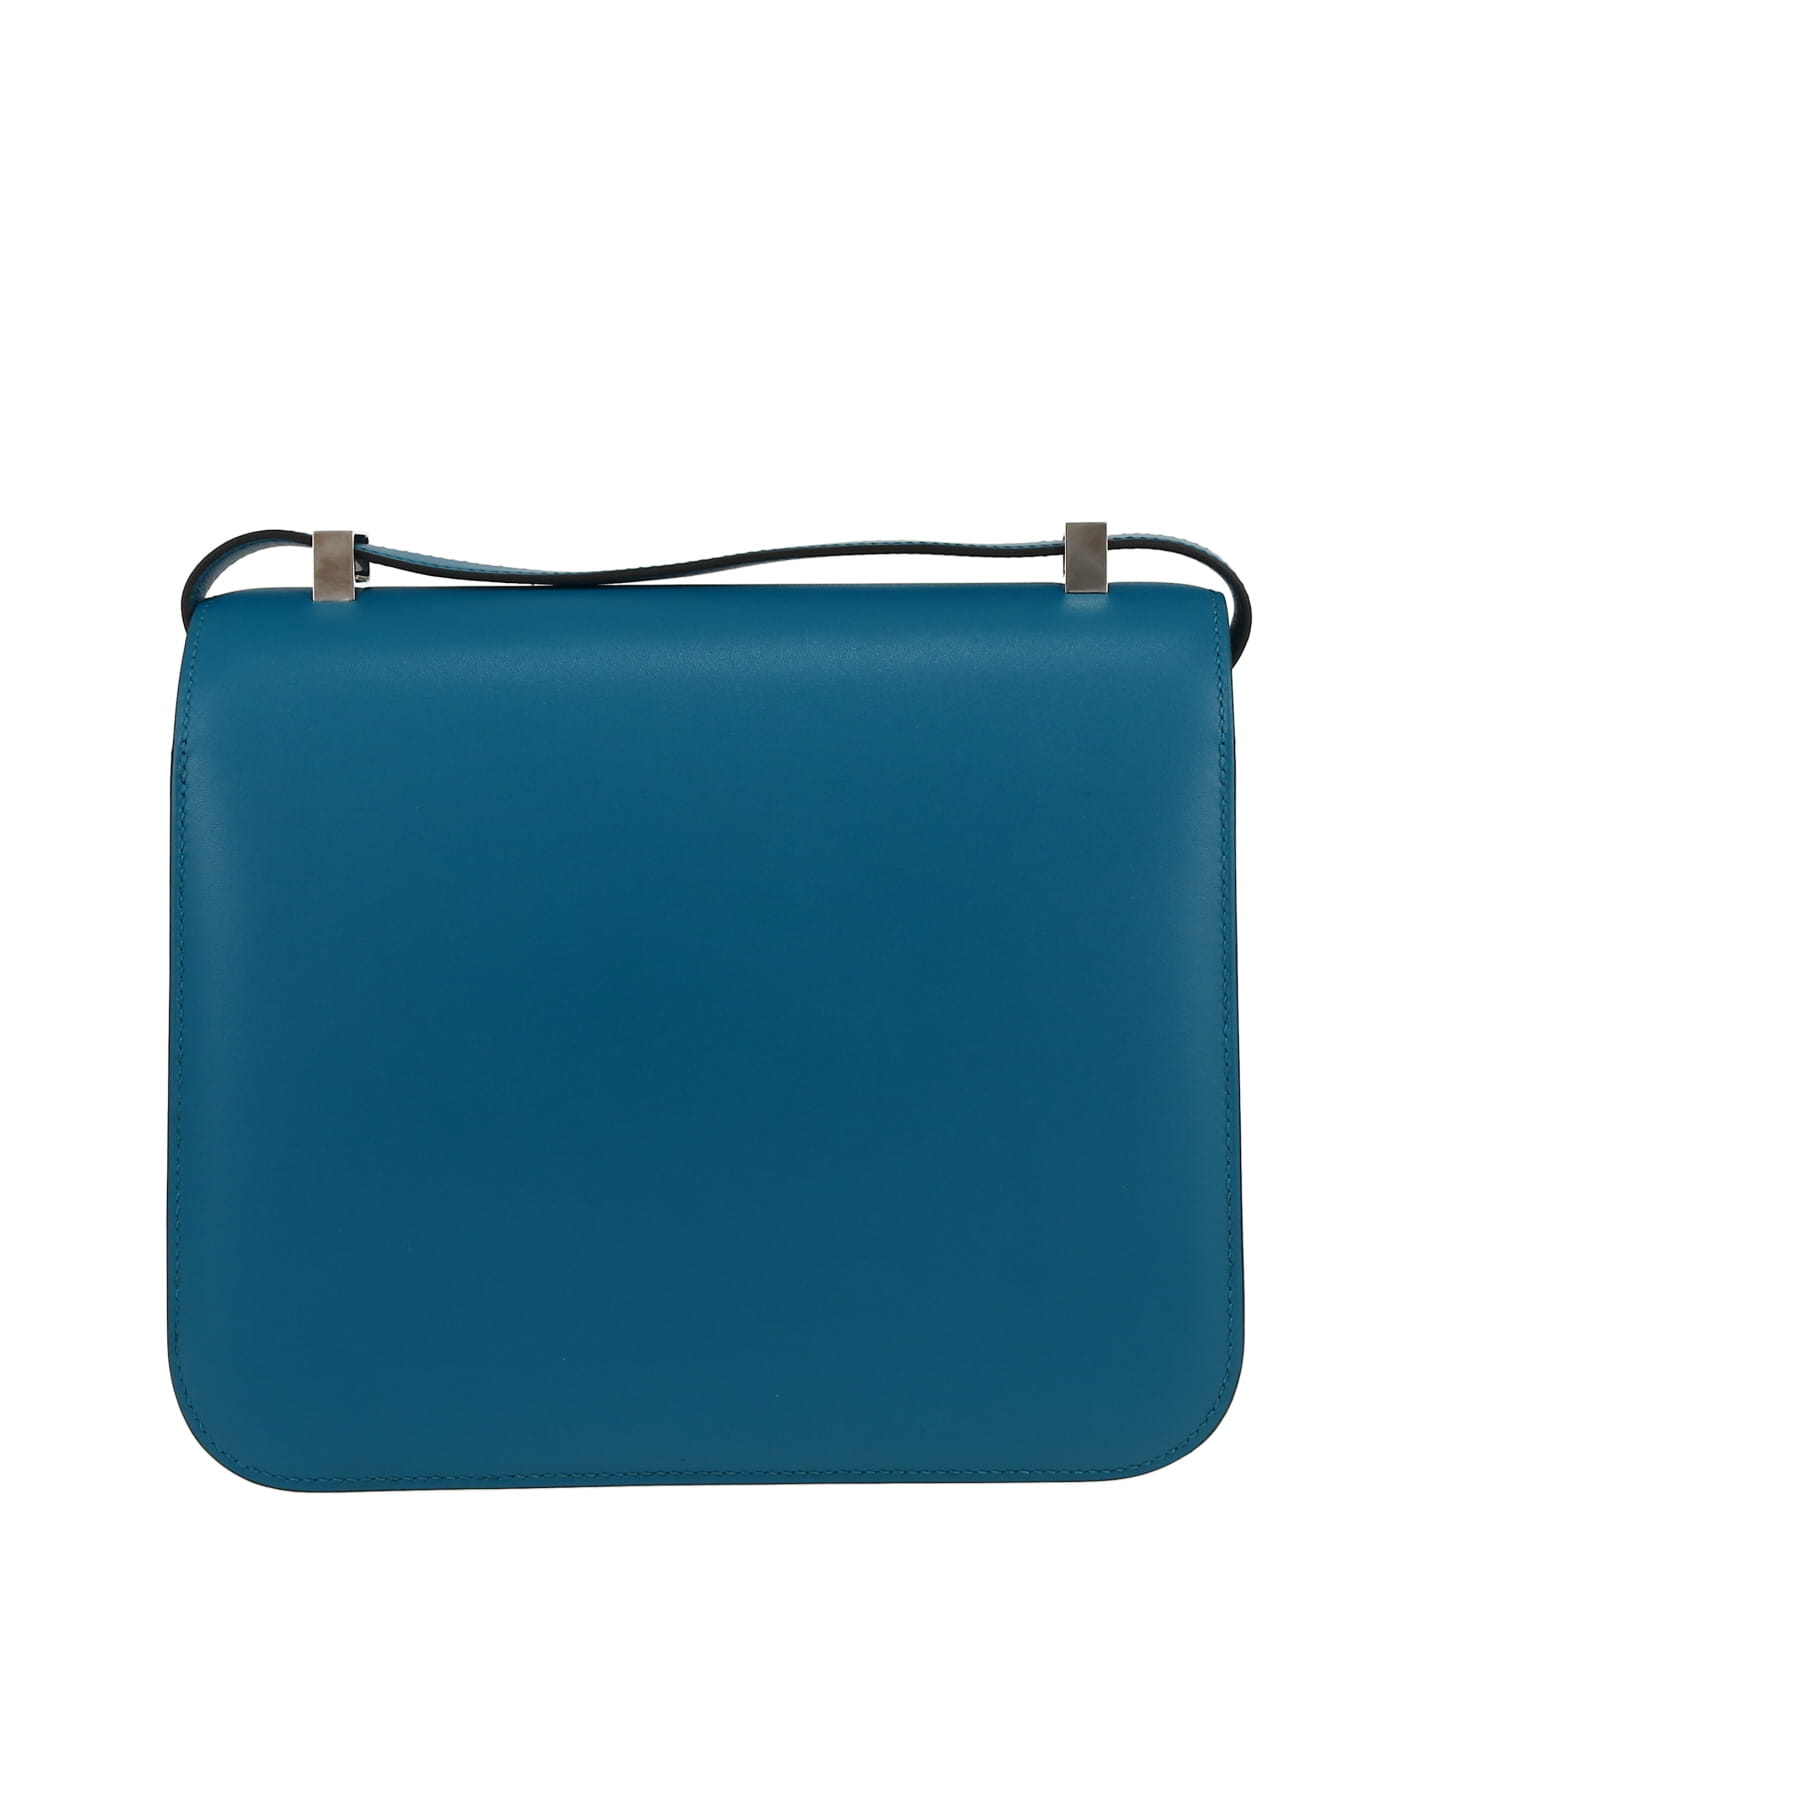 Constance Shoulder Bag In Bleu Izmir Tadelakt Leather